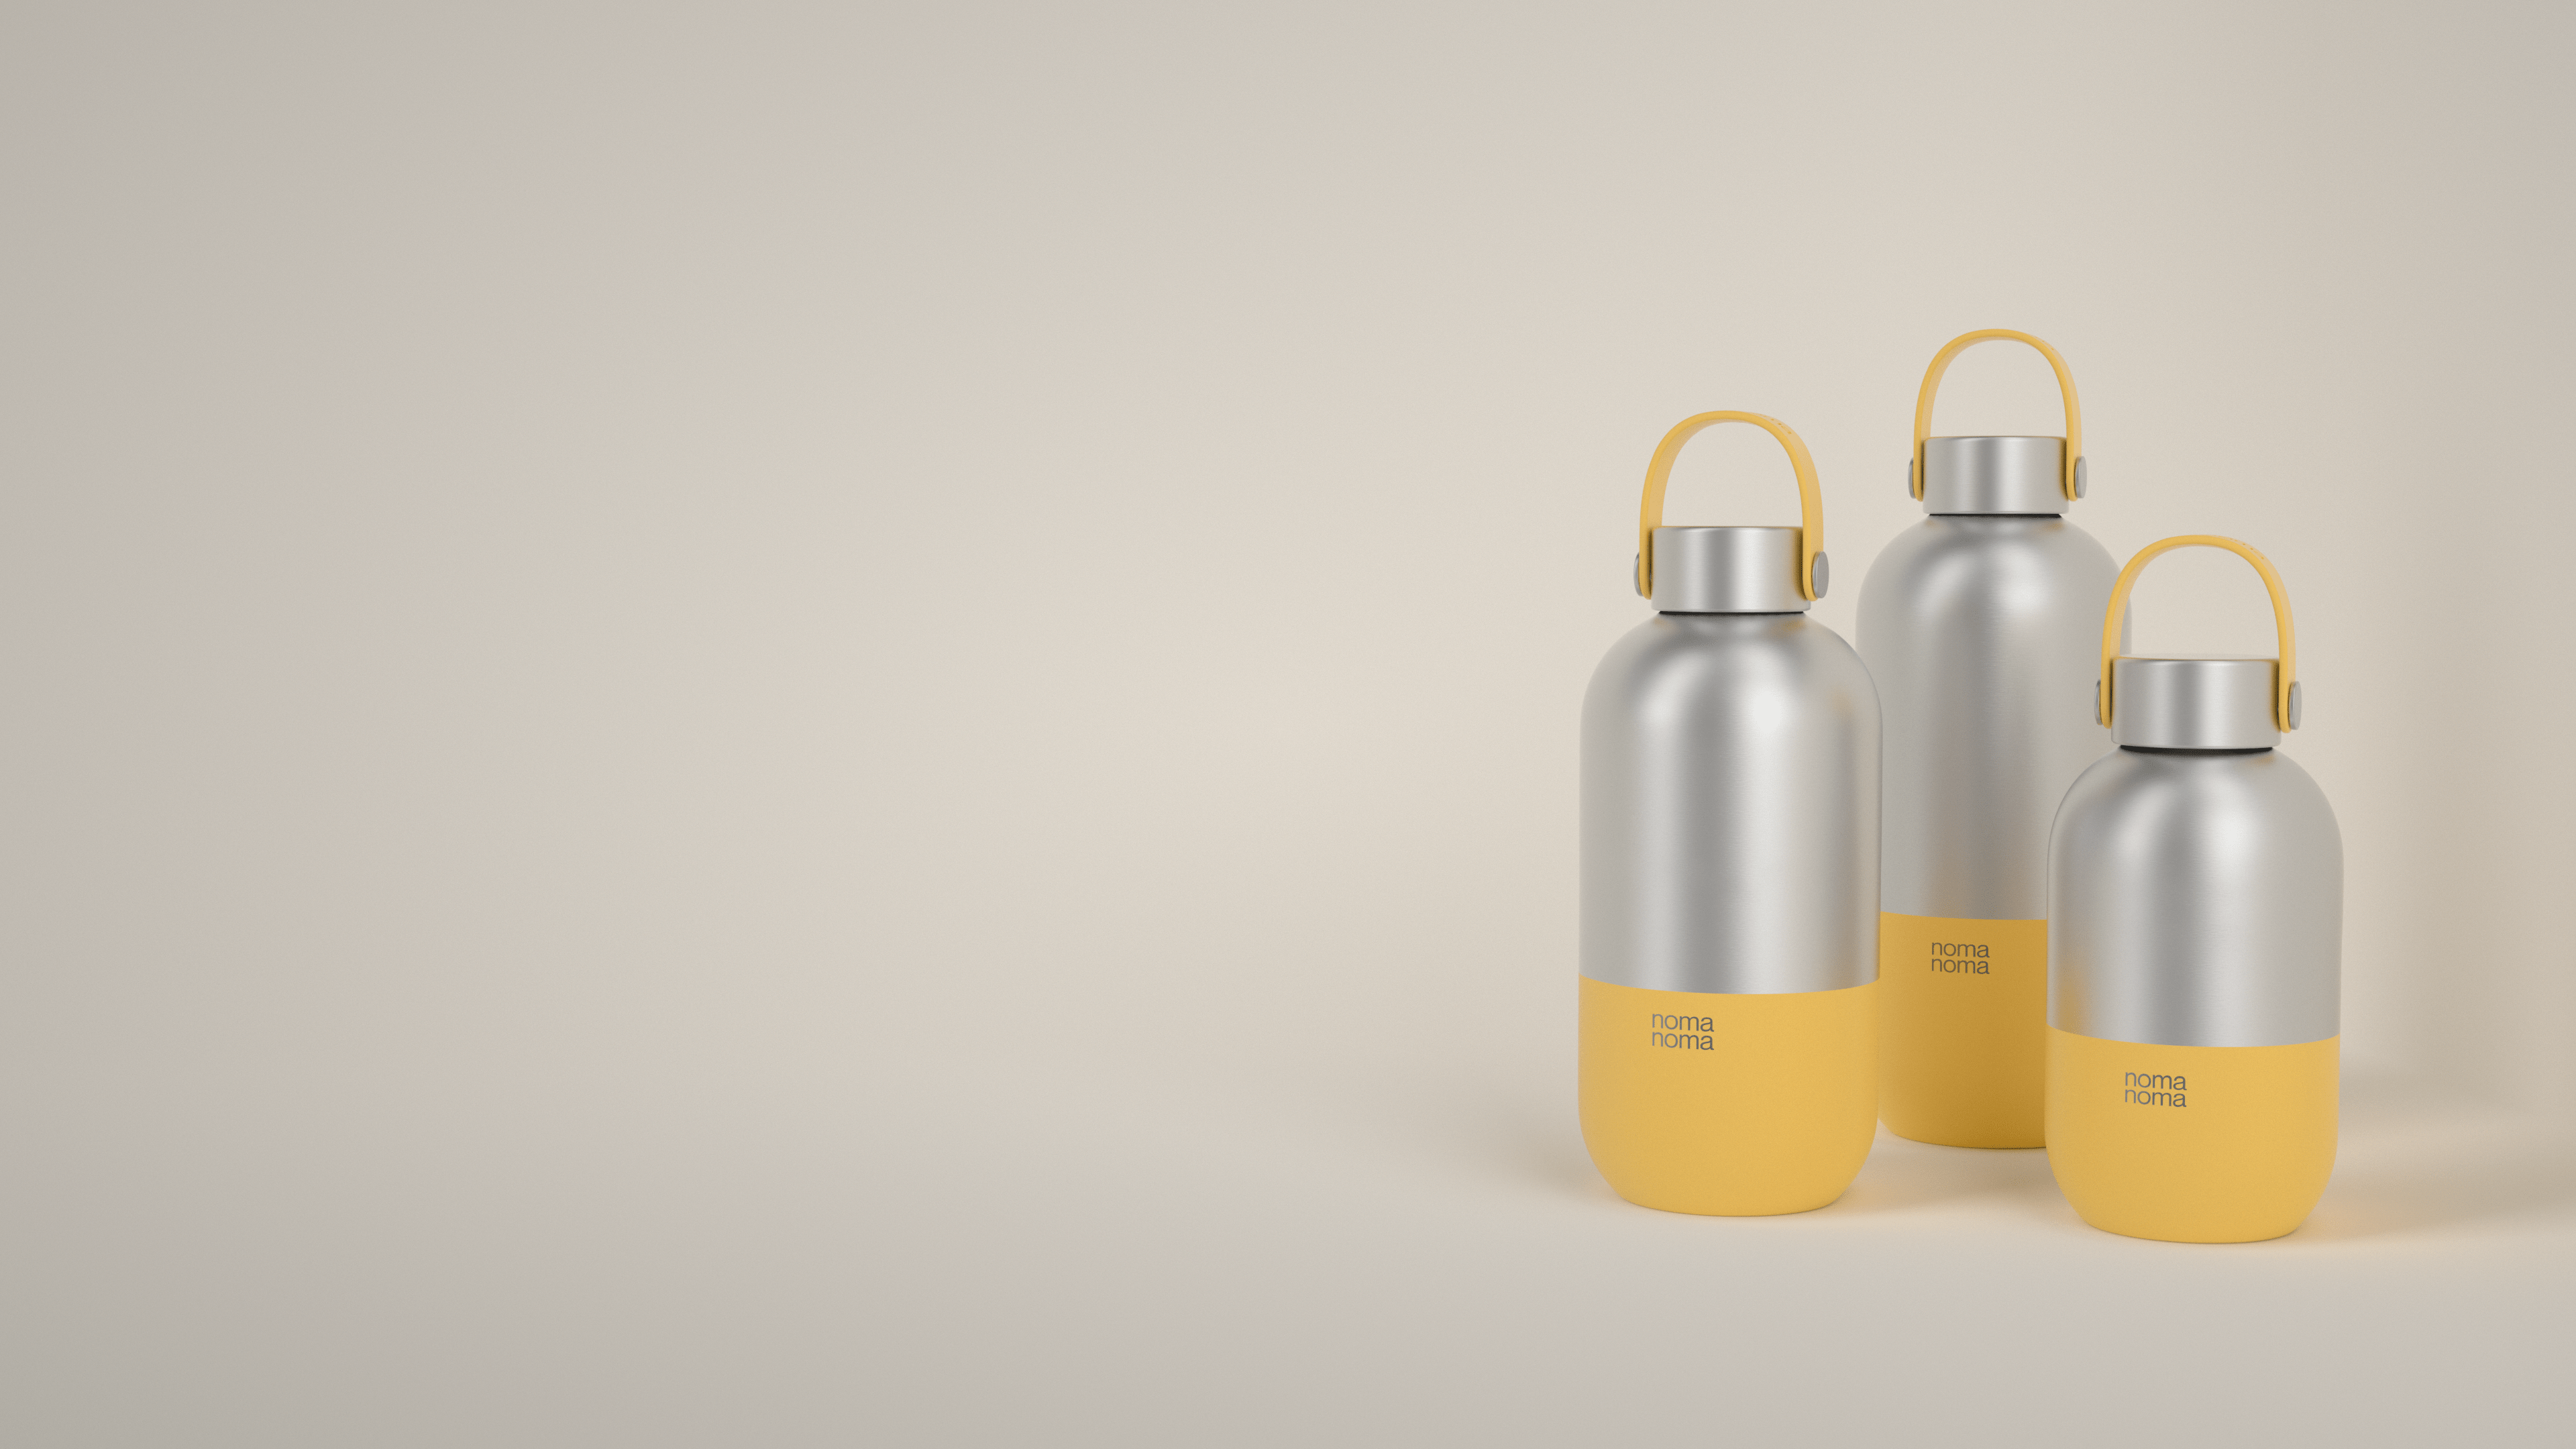 Die gelbe Trinkflasche von noma noma gibt es in drei praktischen Größen.